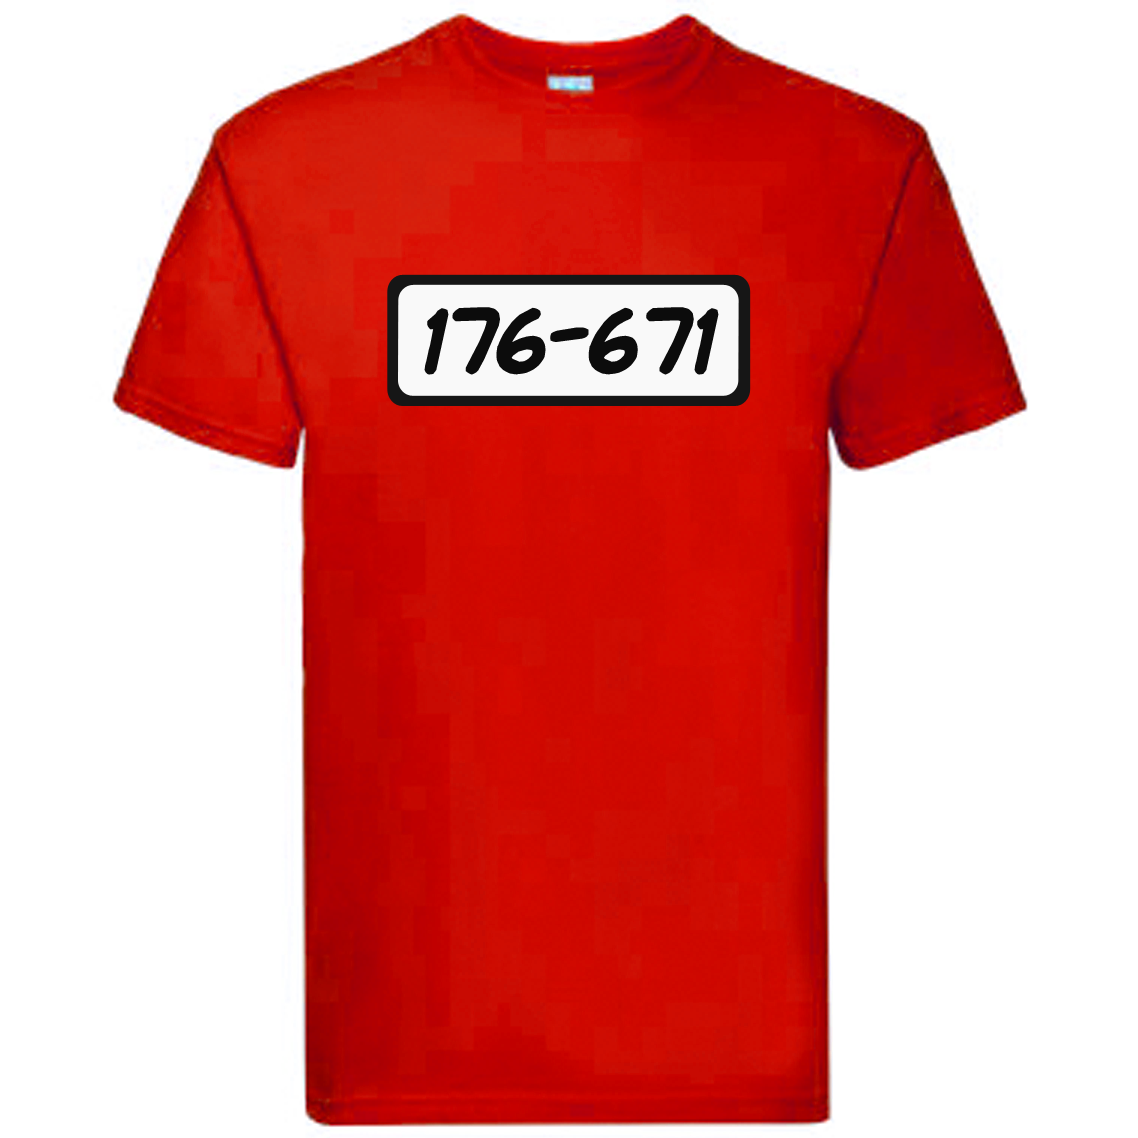 T-Shirt - Björnligan, 176-671